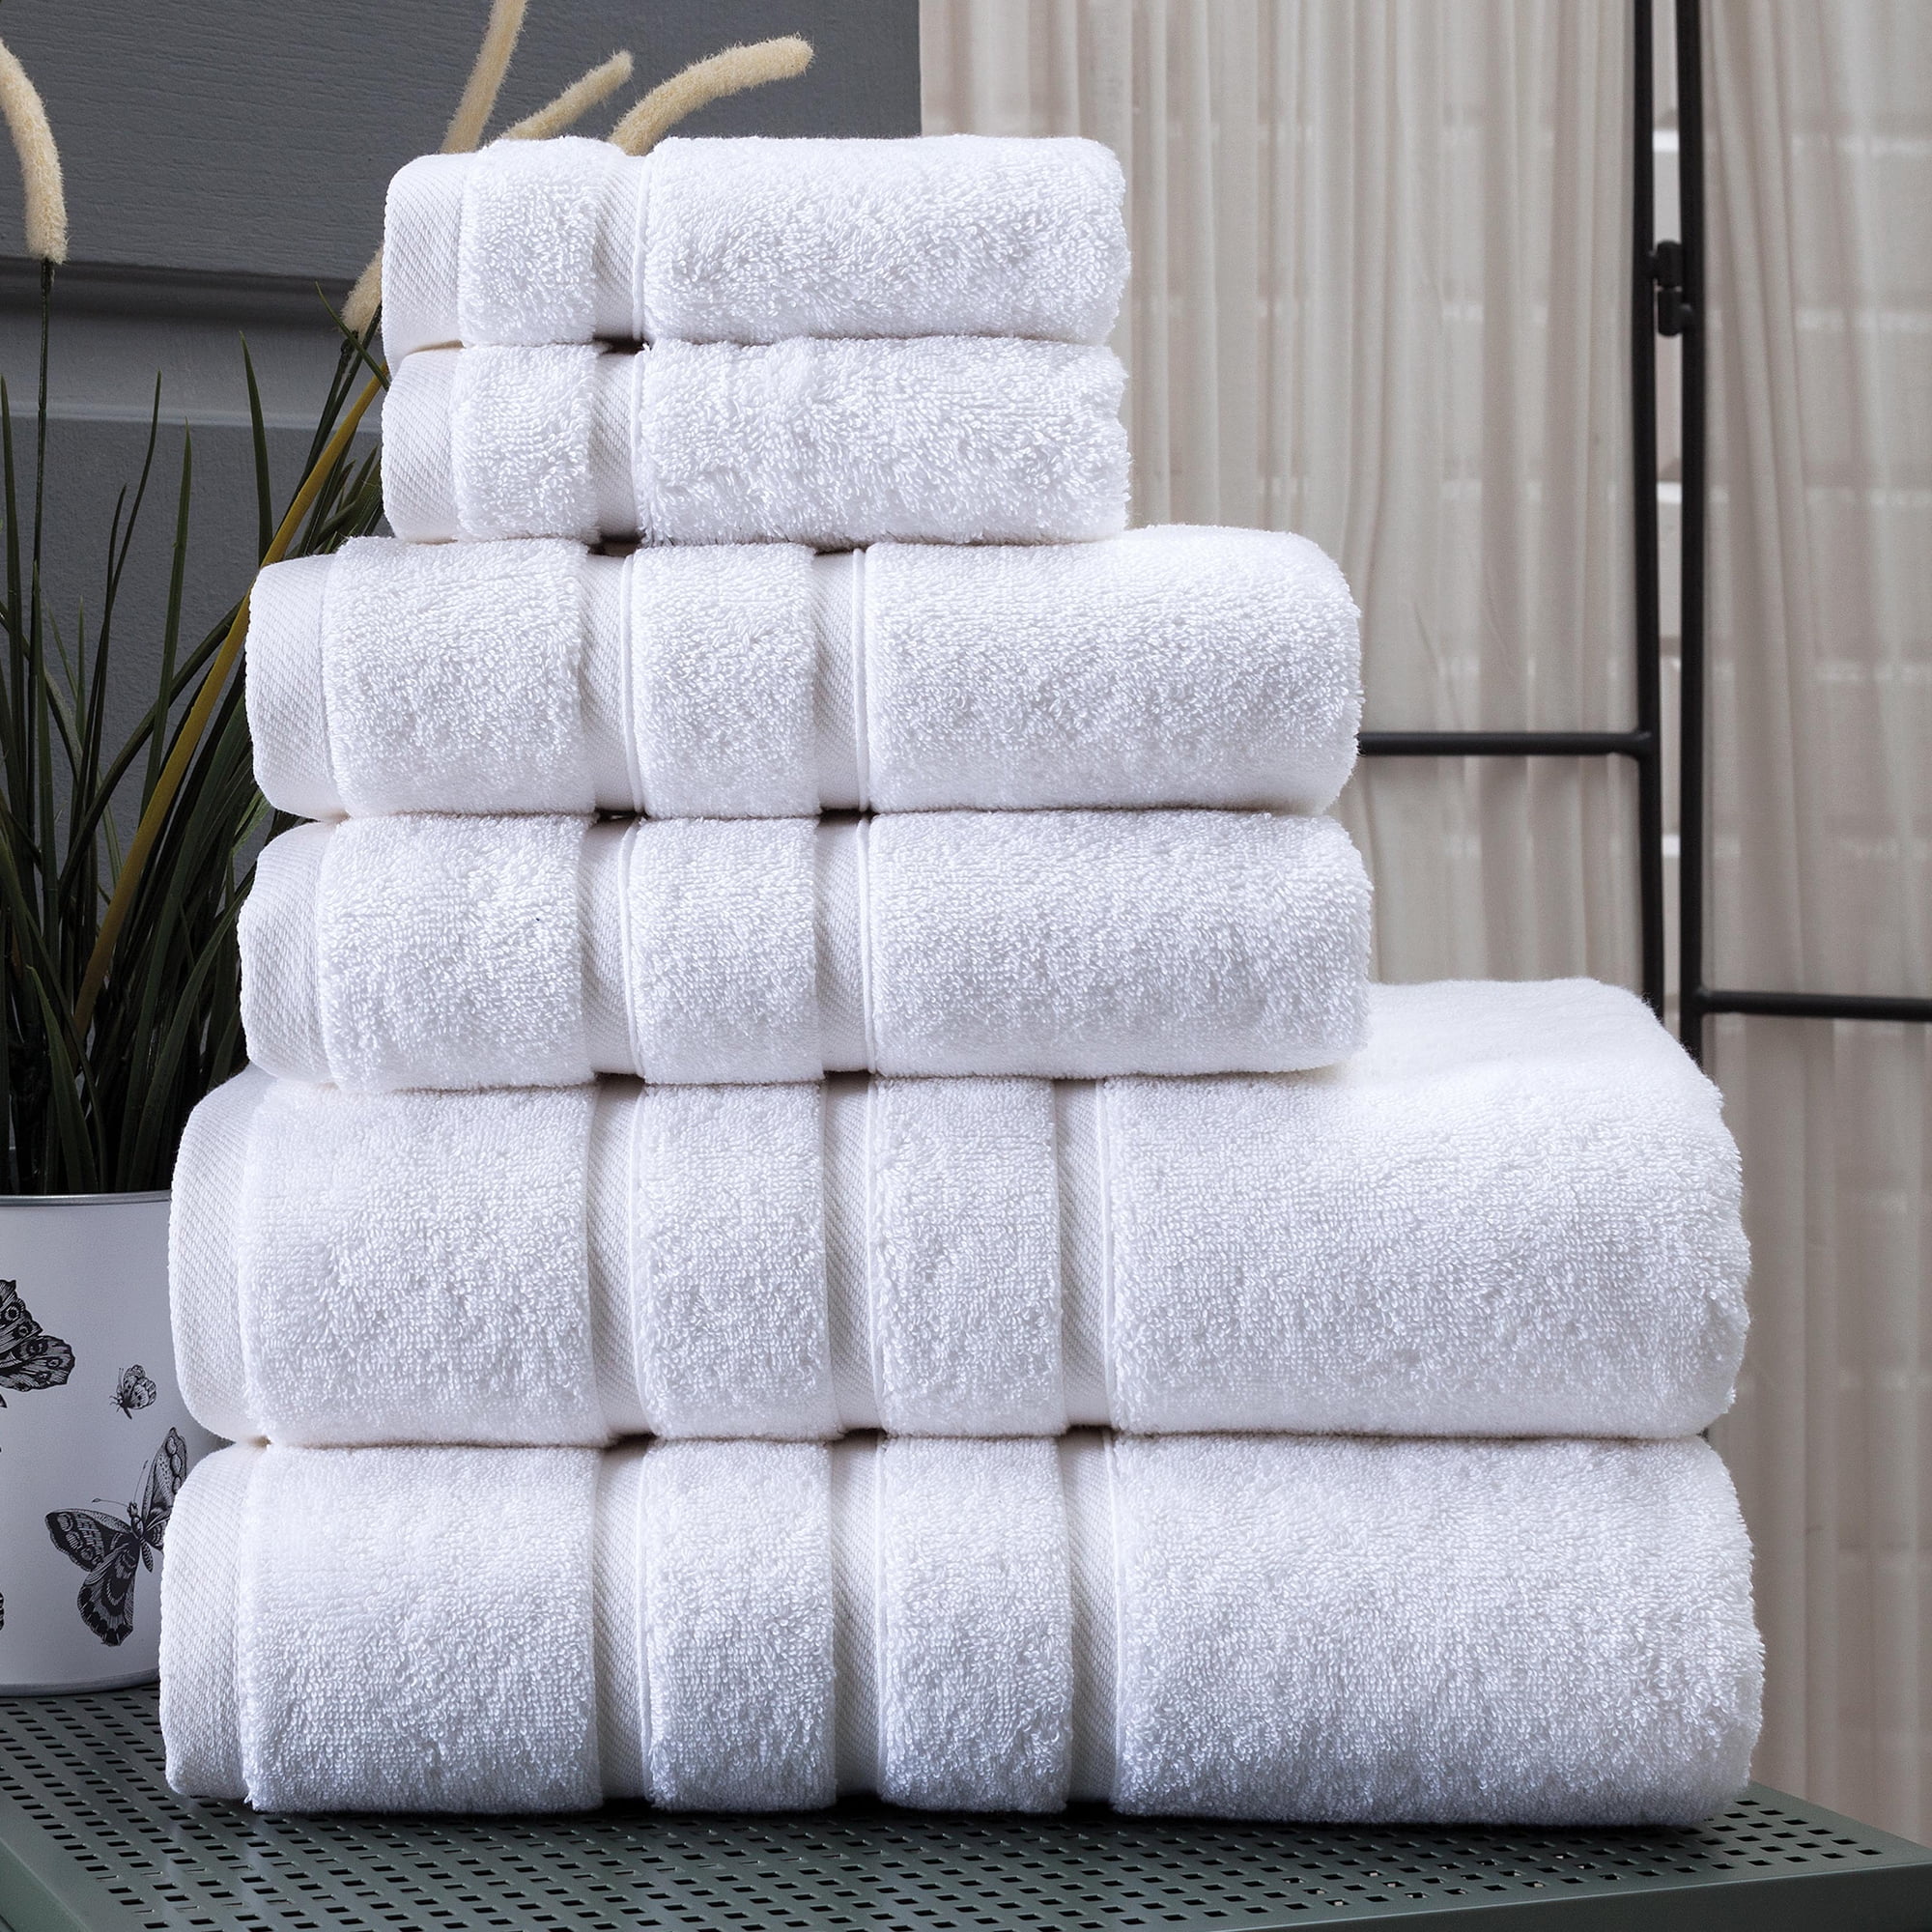 Peshkul Turkish Bathroom Towels, Best Bath Towel Sets Spa & Luxury Hotel &  Gym |100% Turkish Cotton 27x54 |Set of 4 Soft Bath Towels for Bathroom